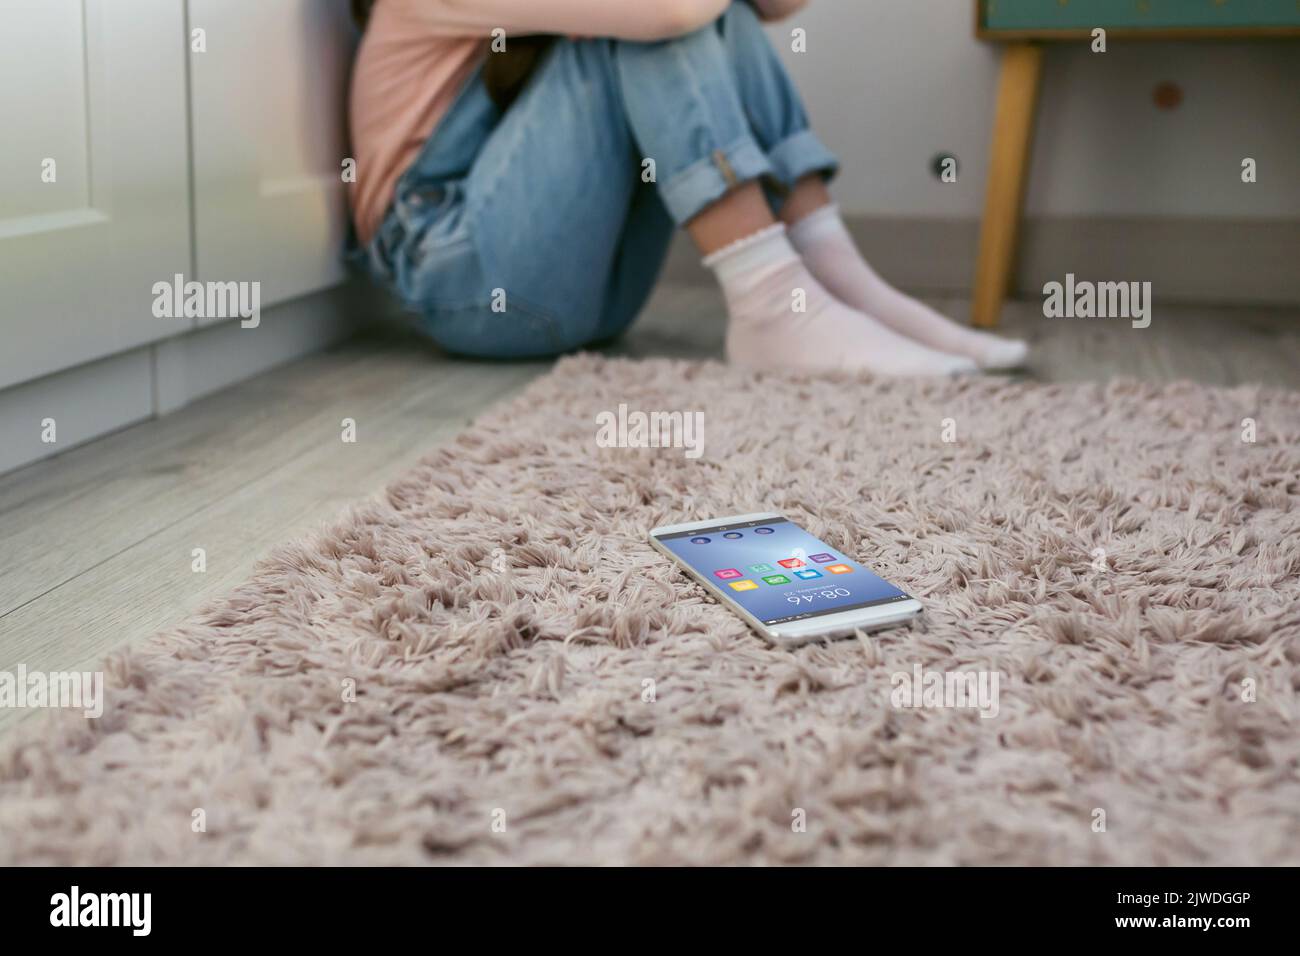 Teléfono móvil tumbado en el suelo con una niña triste irreconocible sentada detrás Foto de stock